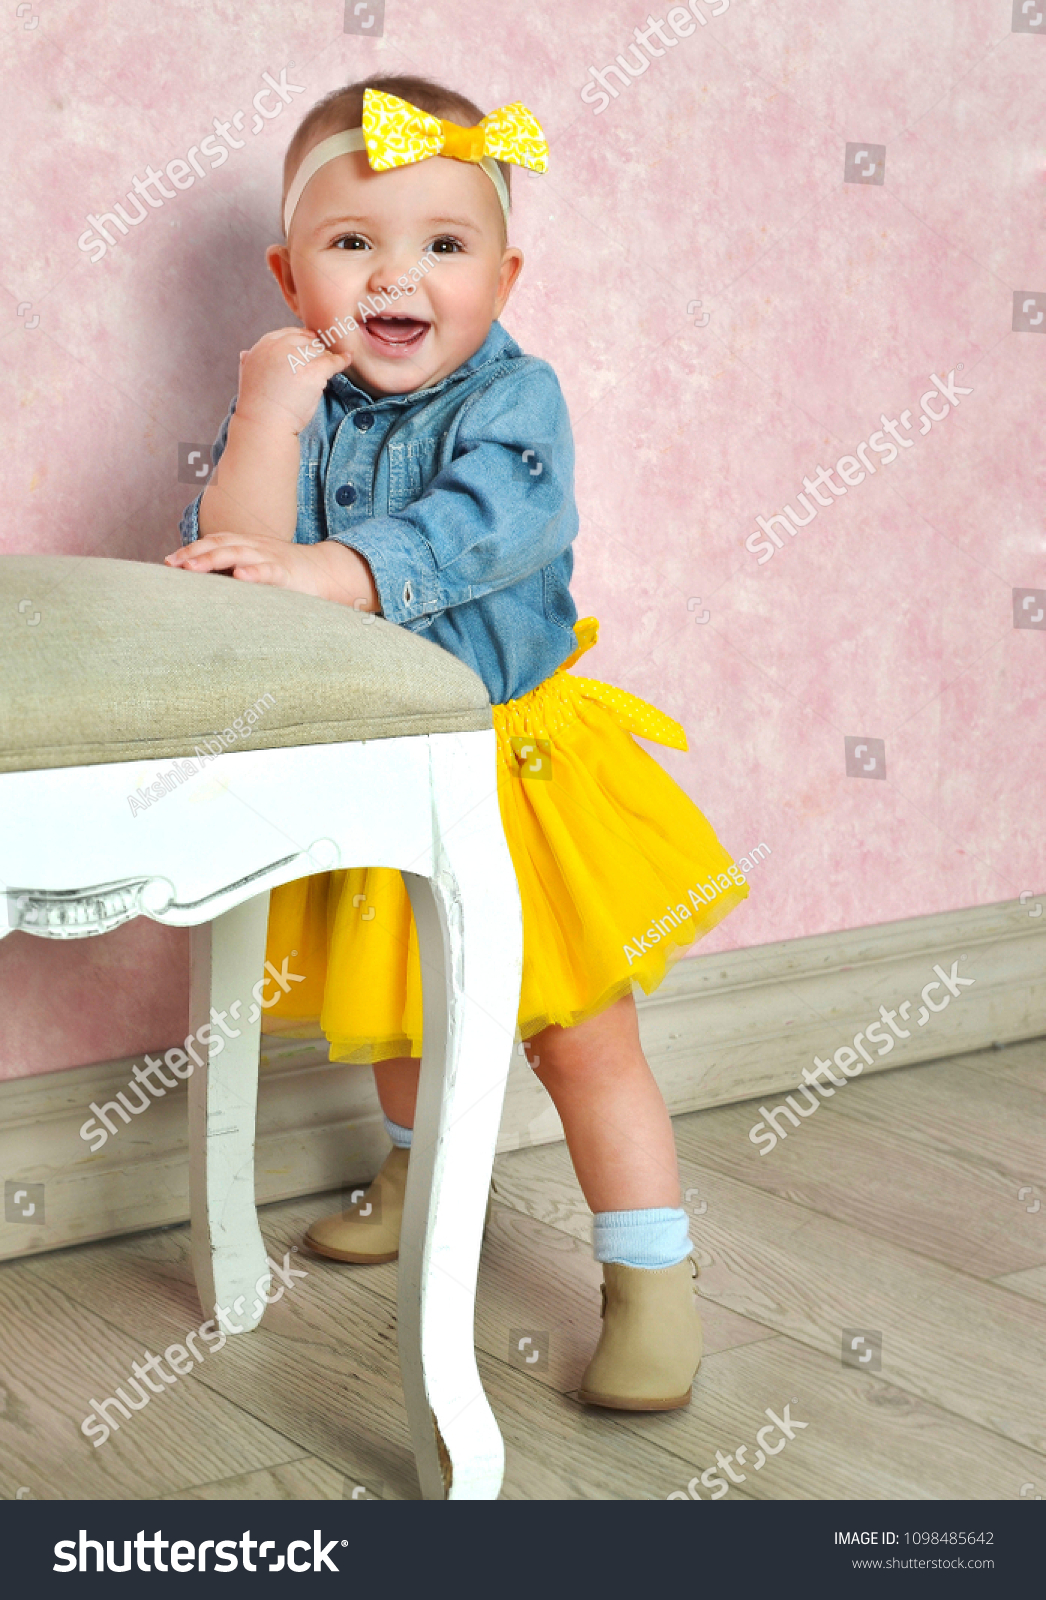 yellow tutu skirt for baby girl